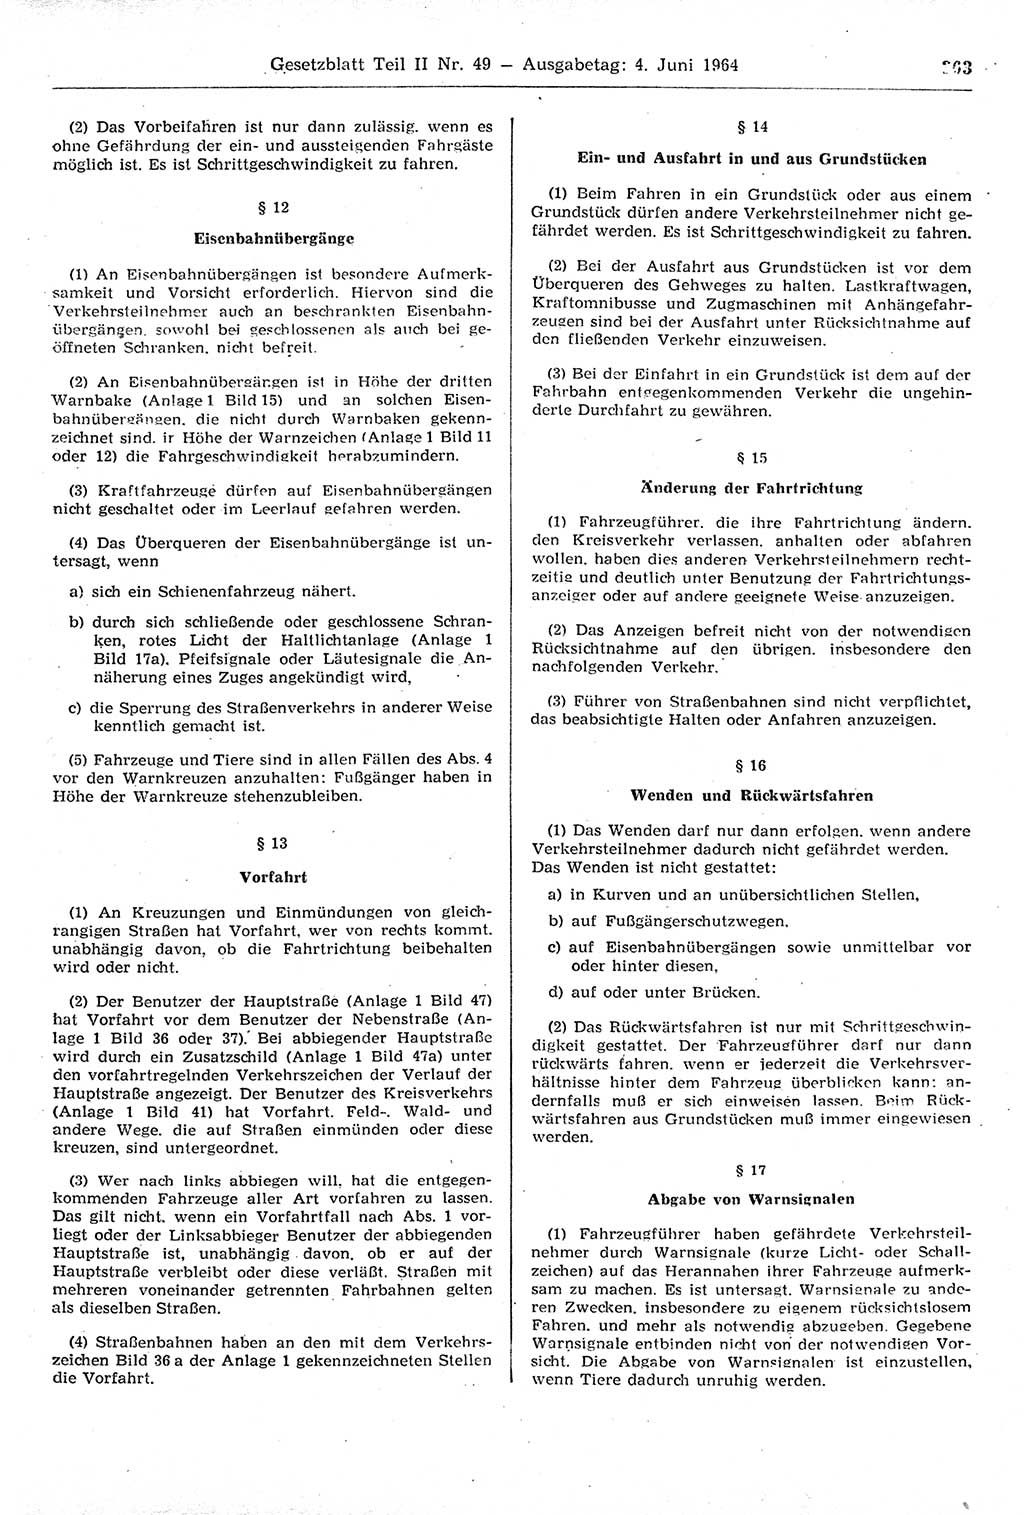 Gesetzblatt (GBl.) der Deutschen Demokratischen Republik (DDR) Teil ⅠⅠ 1964, Seite 363 (GBl. DDR ⅠⅠ 1964, S. 363)